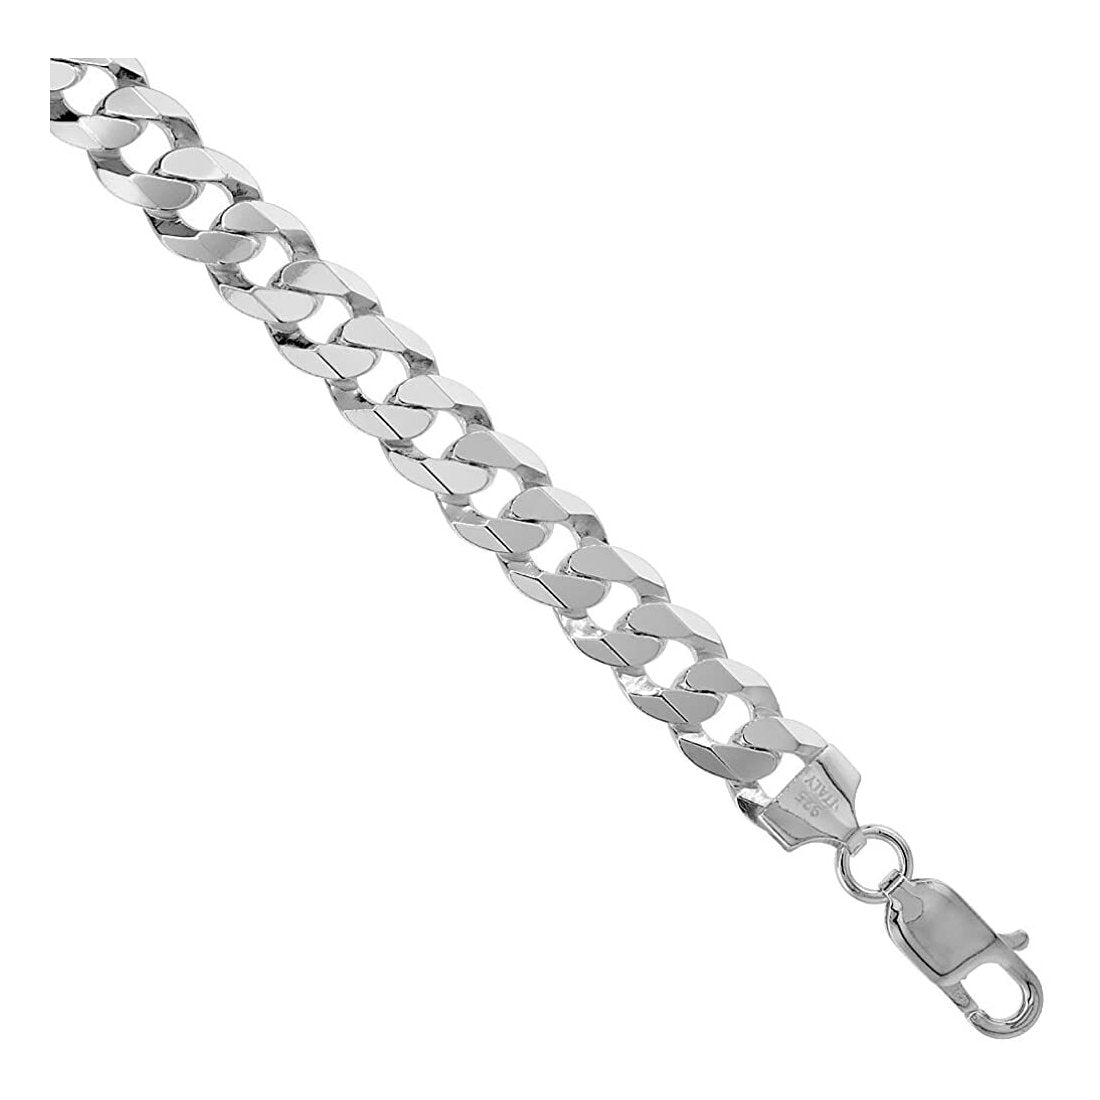 Men's 4.5mm Black Curb Chain Necklace